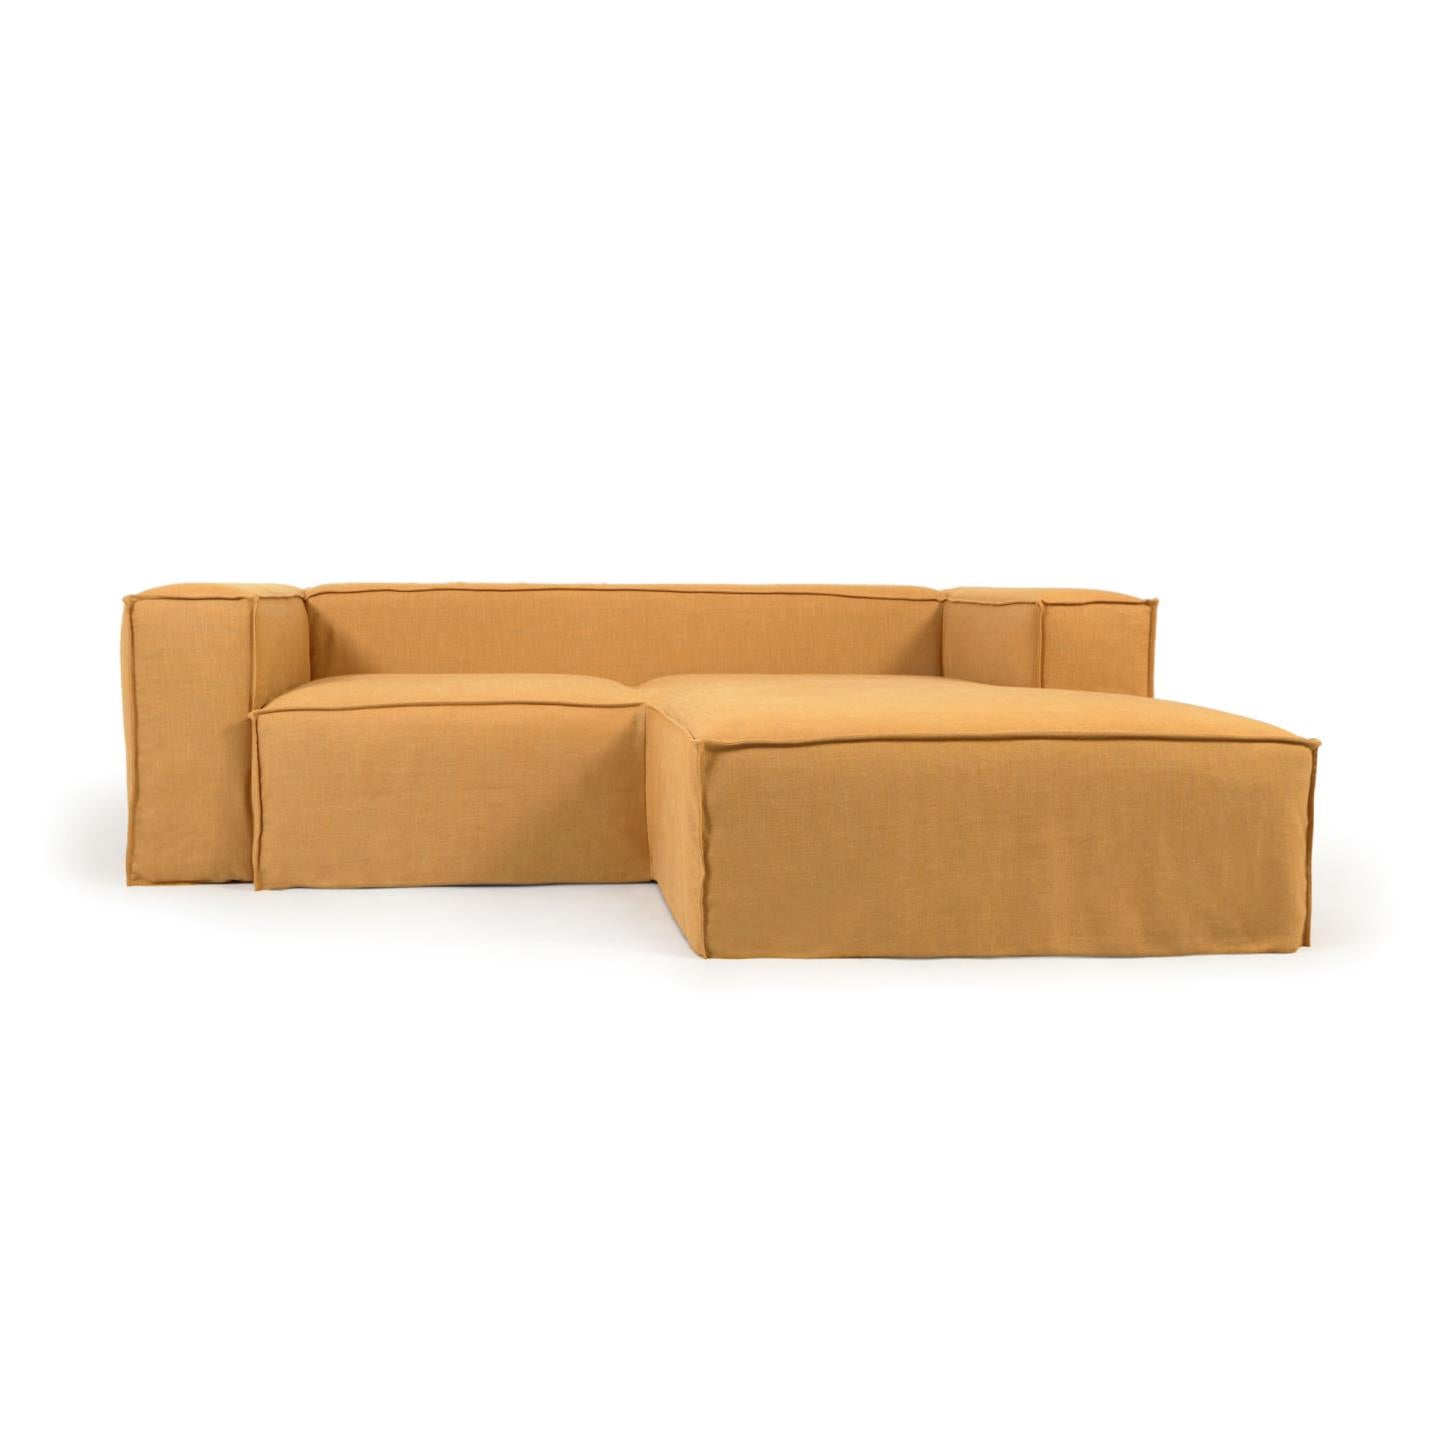 Blok 2 személyes kanapé jobb oldali fekvőfotellel és levehető huzattal, mustárszínű vászon, 240 cm